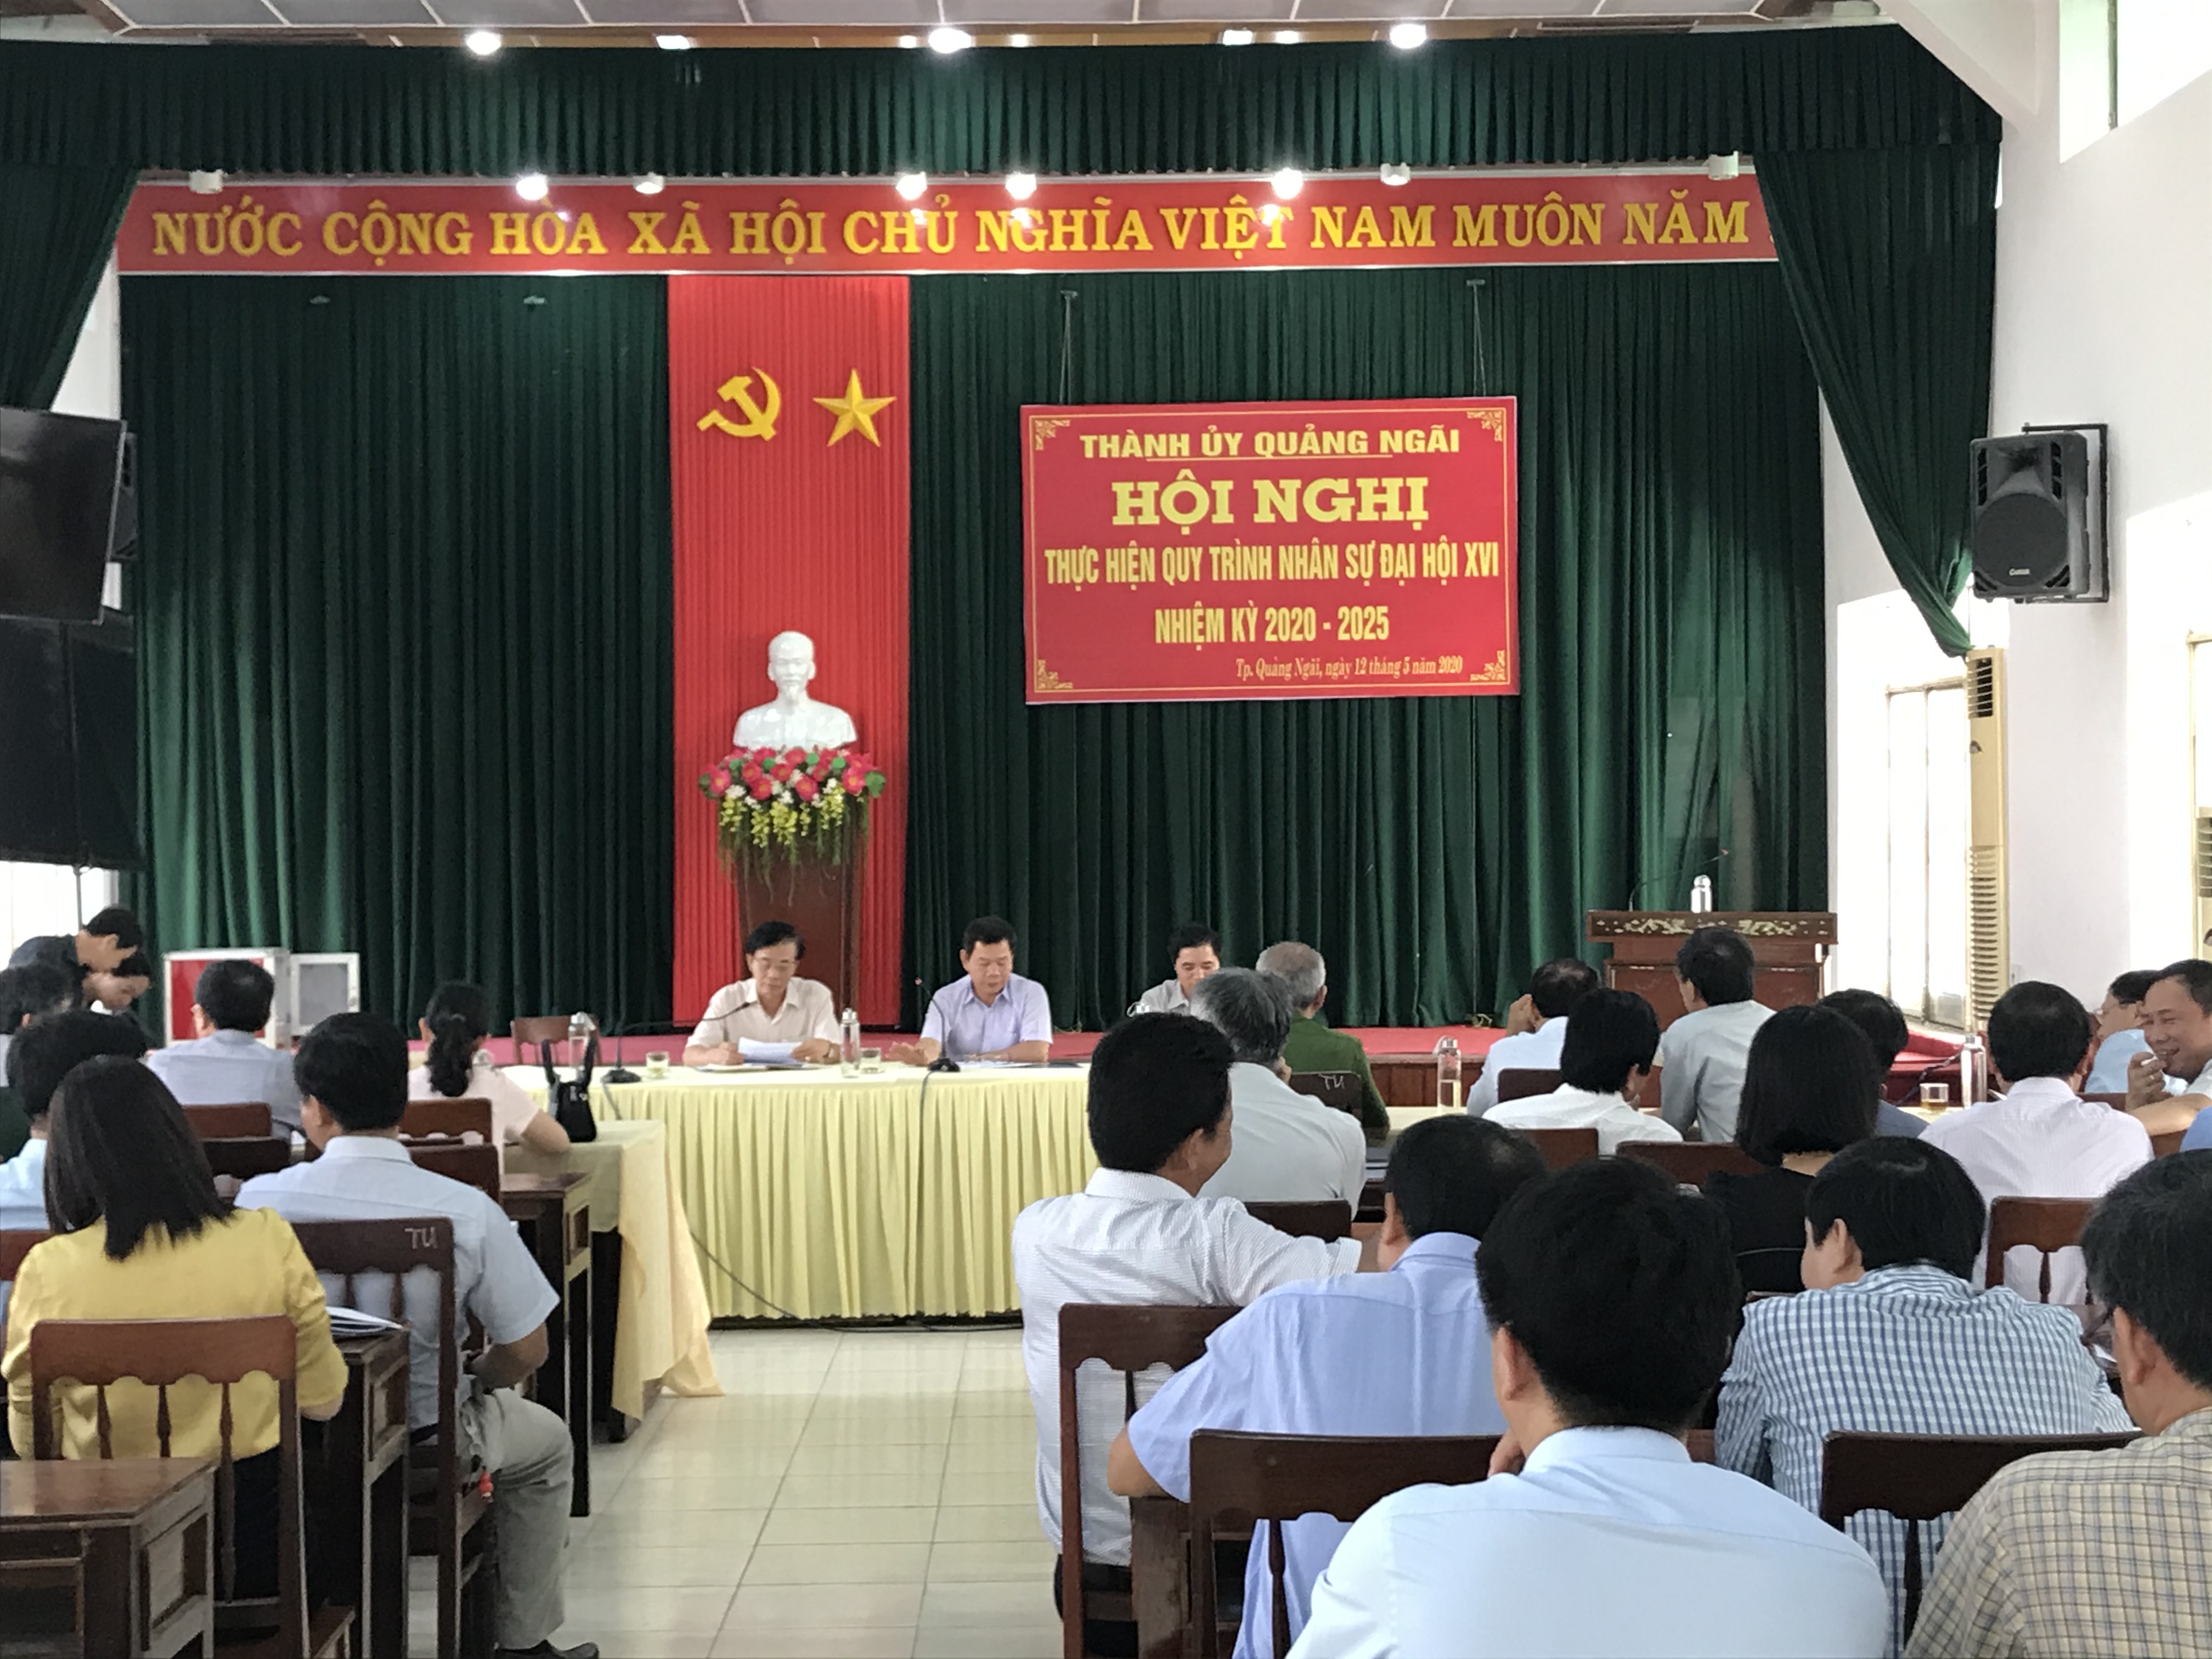 Hội nghị thực hiện quy trình nhân sự Đại hội đại biểu Đảng bộ thành phố Quảng Ngãi lần thứ XVI, nhiệm kỳ 2020 - 2025